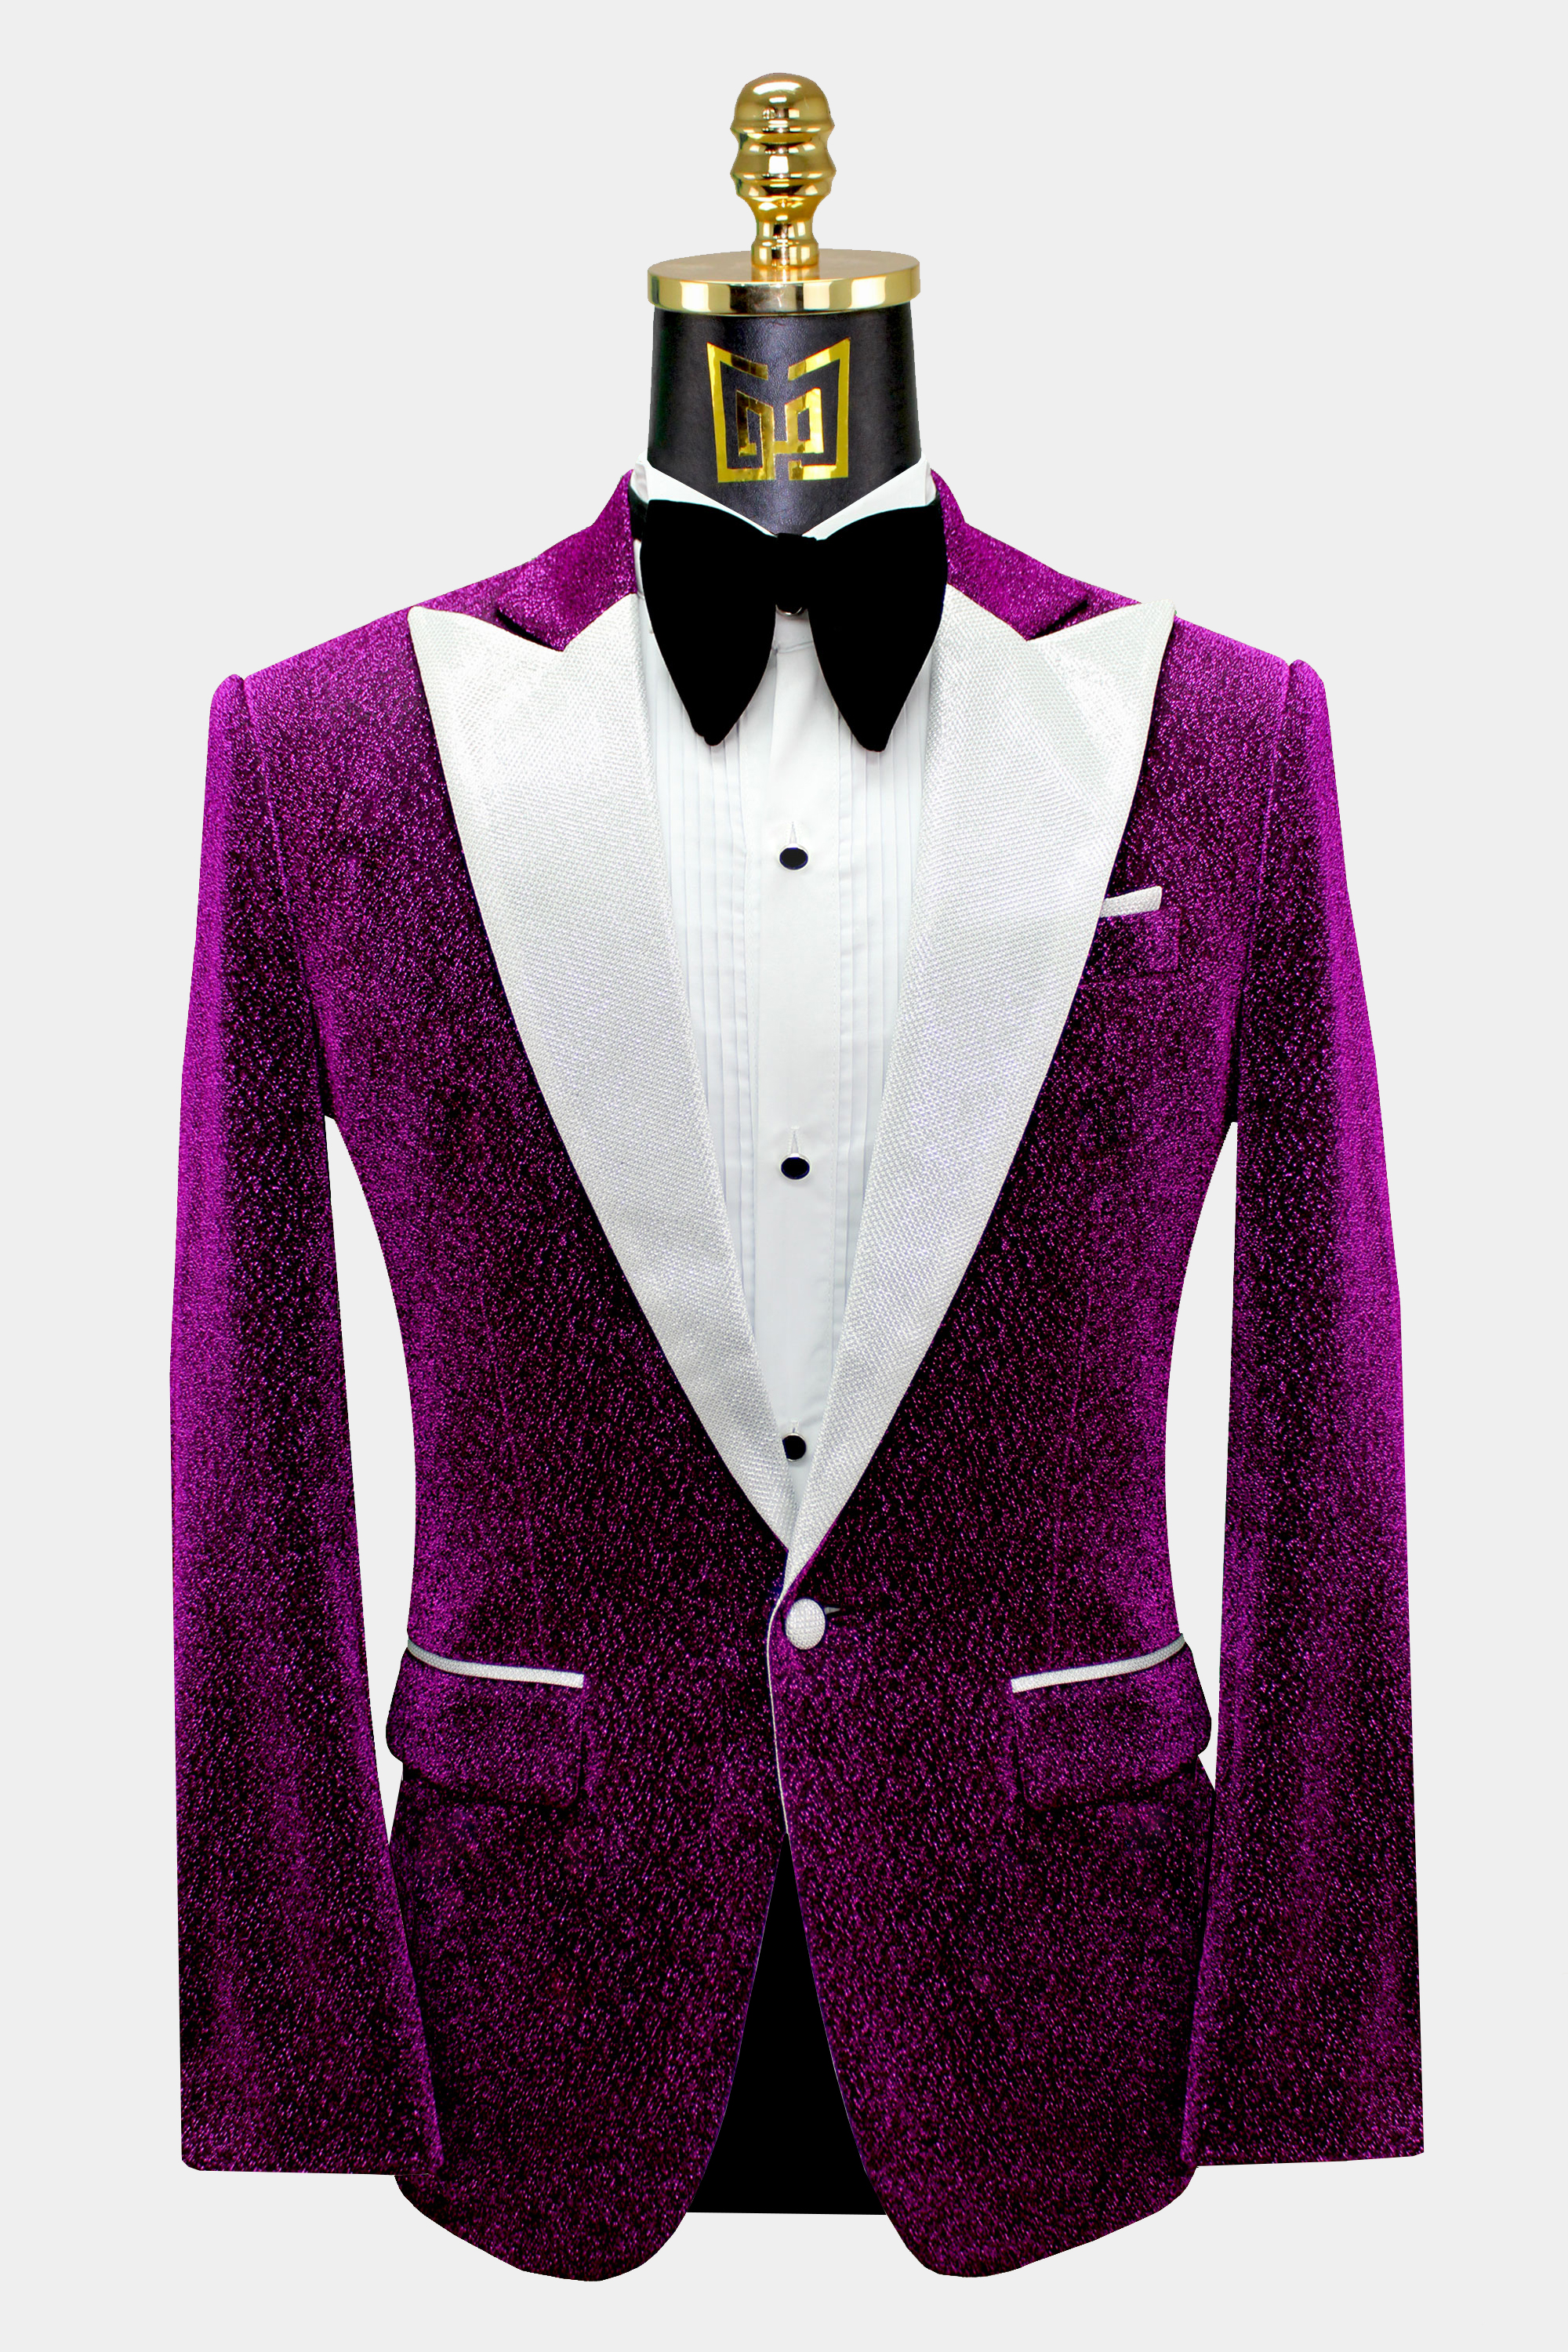 Mens-Purple-Glitter-Tuxedo-Jacket-Groom-Prom-Blazer-Suit-from-Gentlemansguru.com